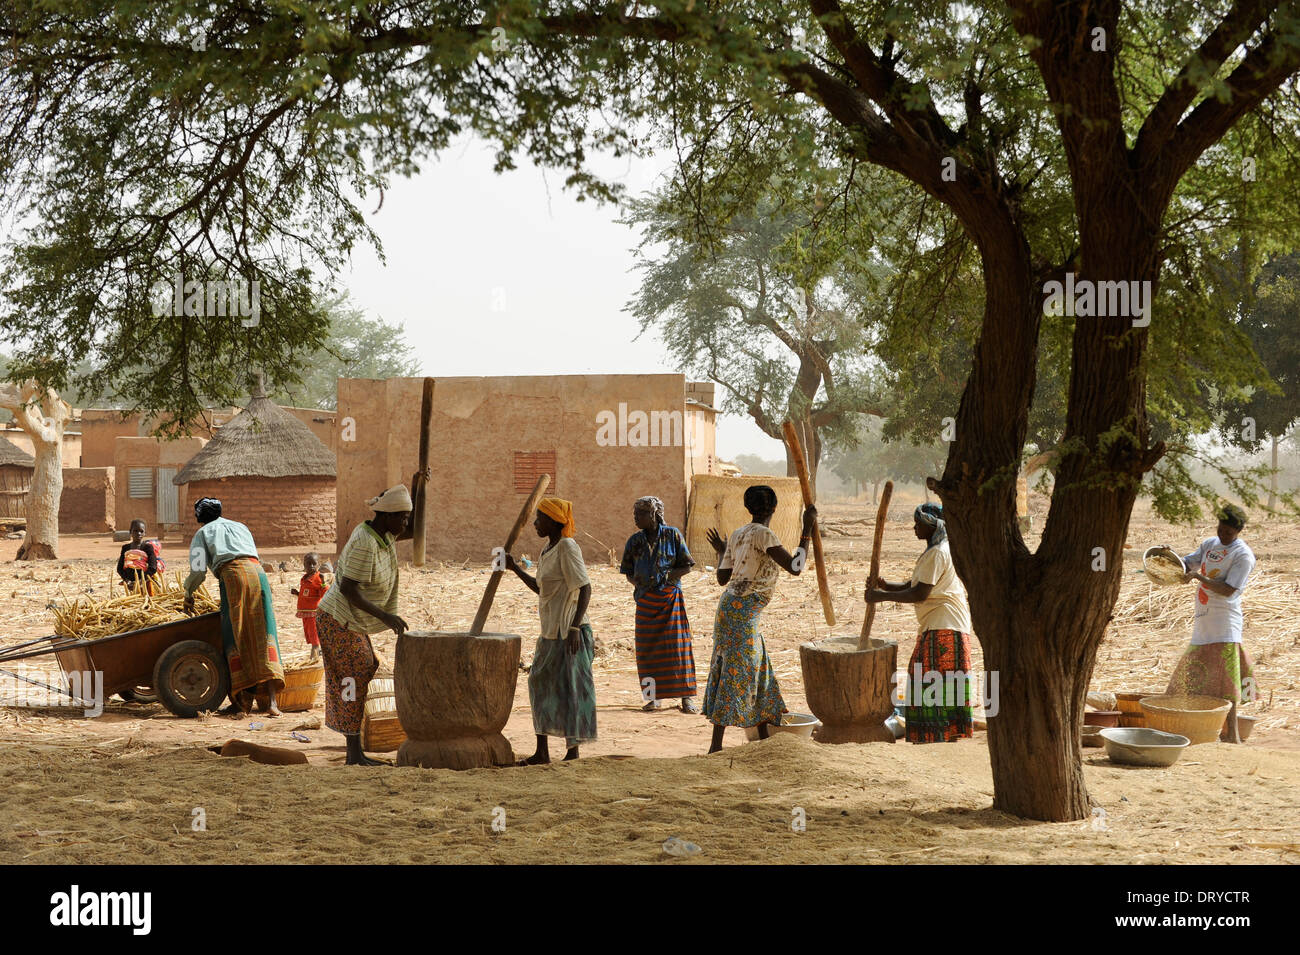 BURKINA FASO Kaya Korsimoro village, les femmes, livre de millet, de la région du Sahel est régulièrement touchée par la sécheresse et la faim Banque D'Images